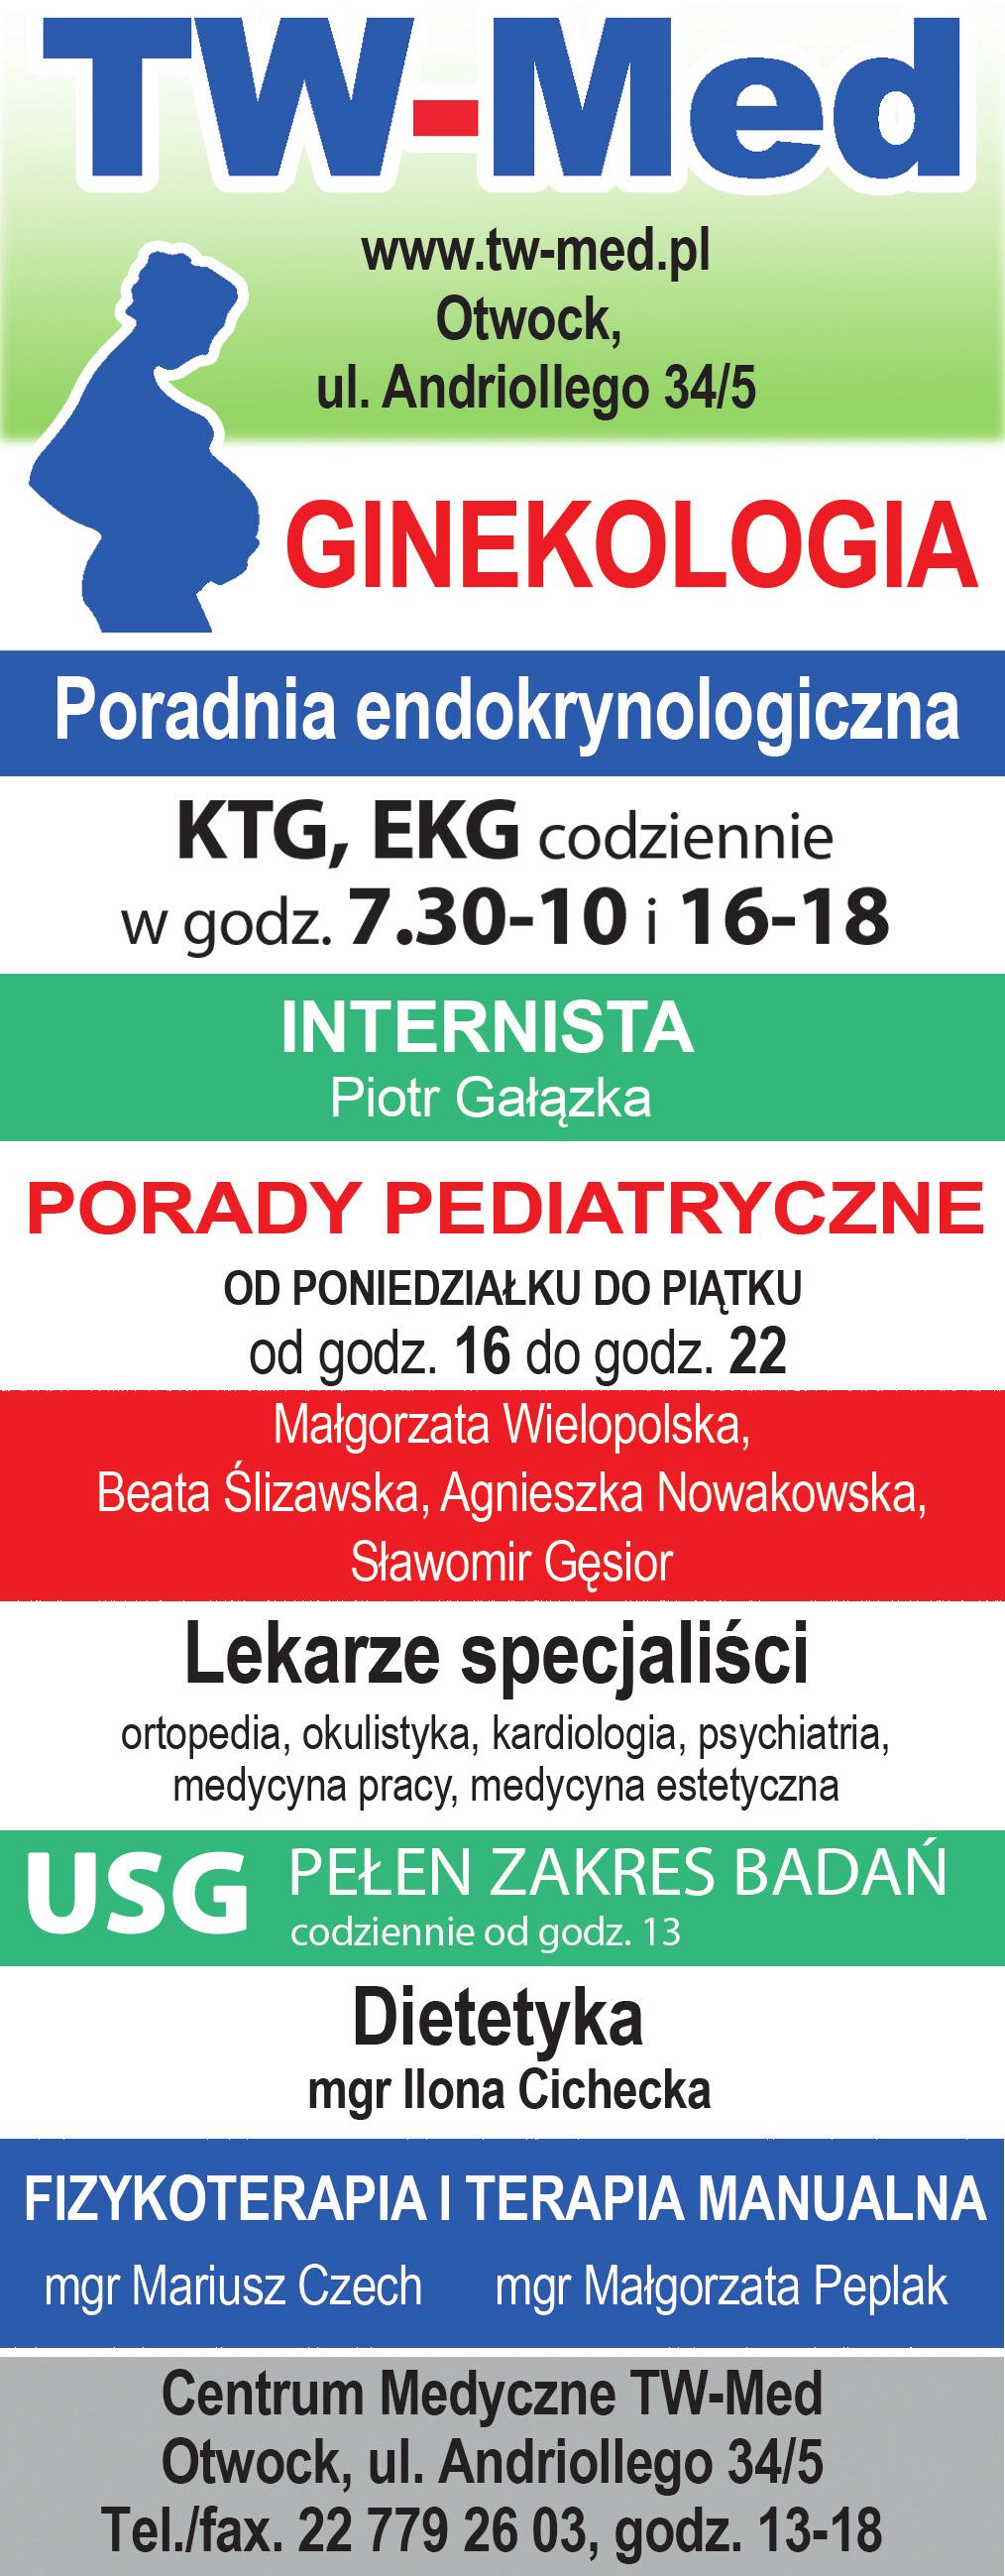 ogłoszenia drobne 41 linia otwocka 25 września 1 października 2017 GaBineT okulistyczny SPECJALISTYCZNE CENTRUM REHABILITACJI www.specer.pl lek. małgorzata gruchoła specjalista ii st. okulistyki lek.